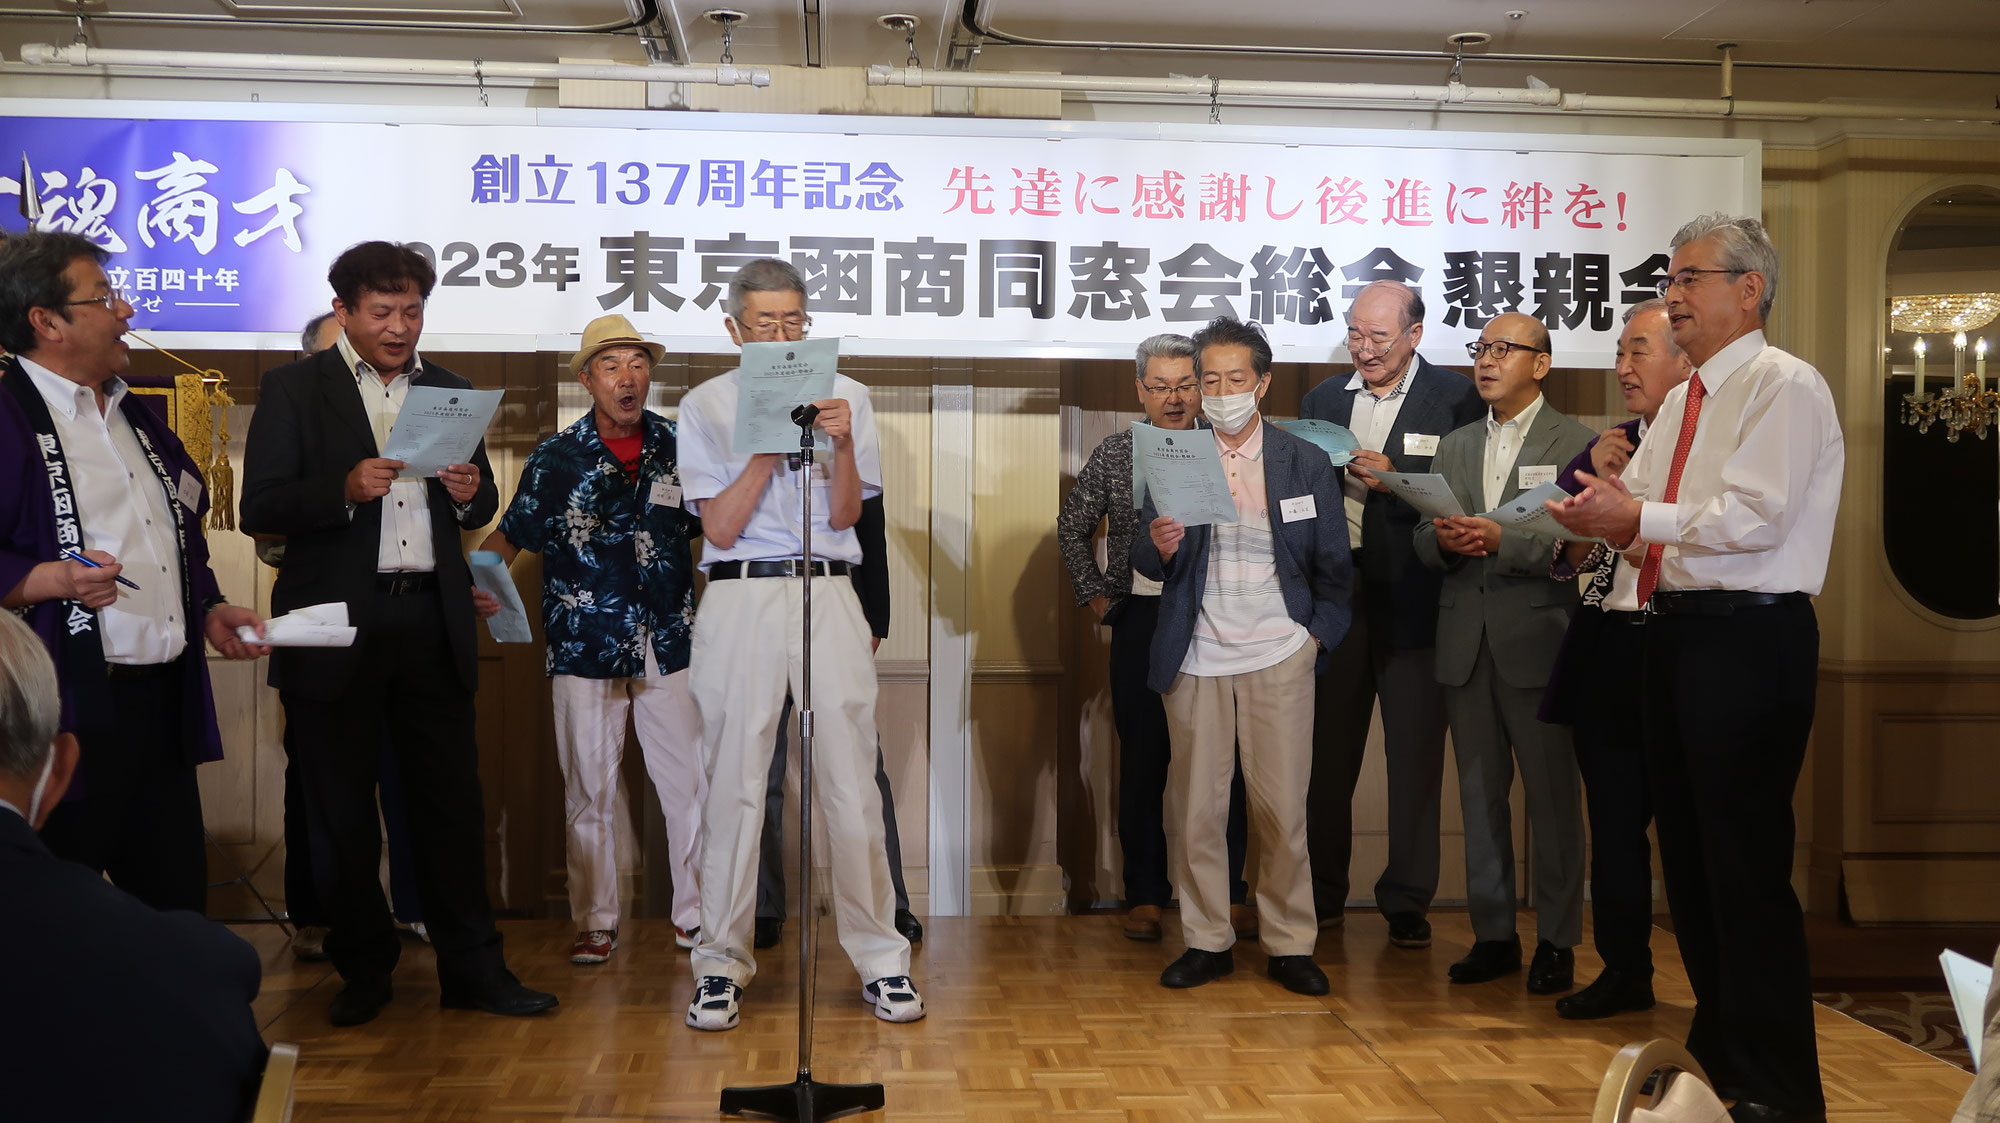 4年ぶりに開催された東京函商同窓会は109名が参集しました